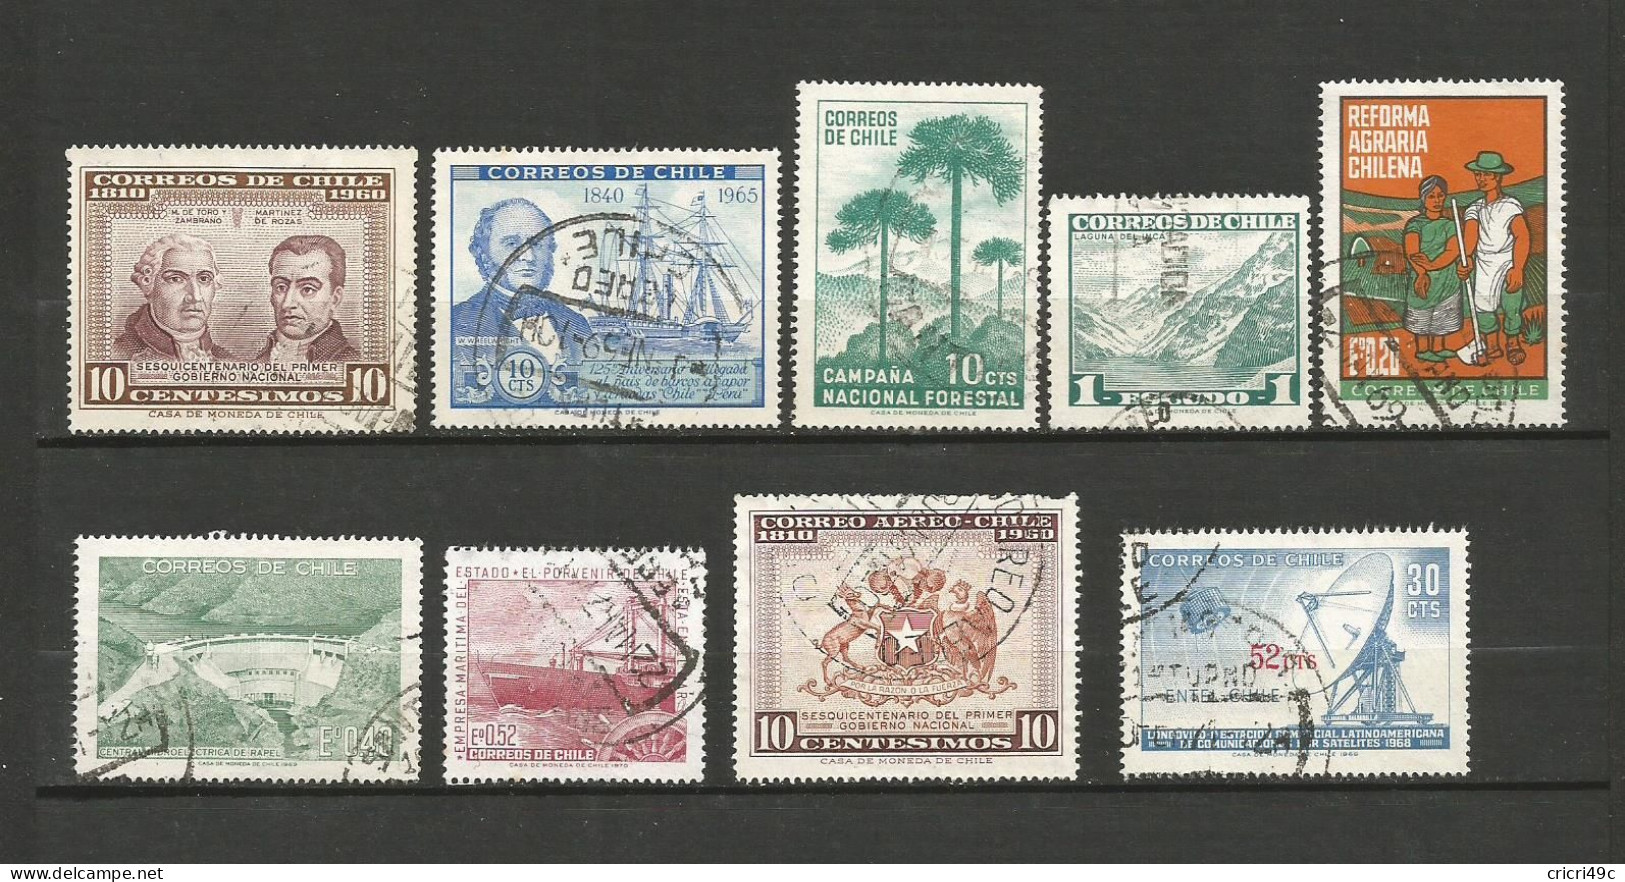 Chili 1 lot de 48 timbres oblitérés  (c2) voir les 2 scans